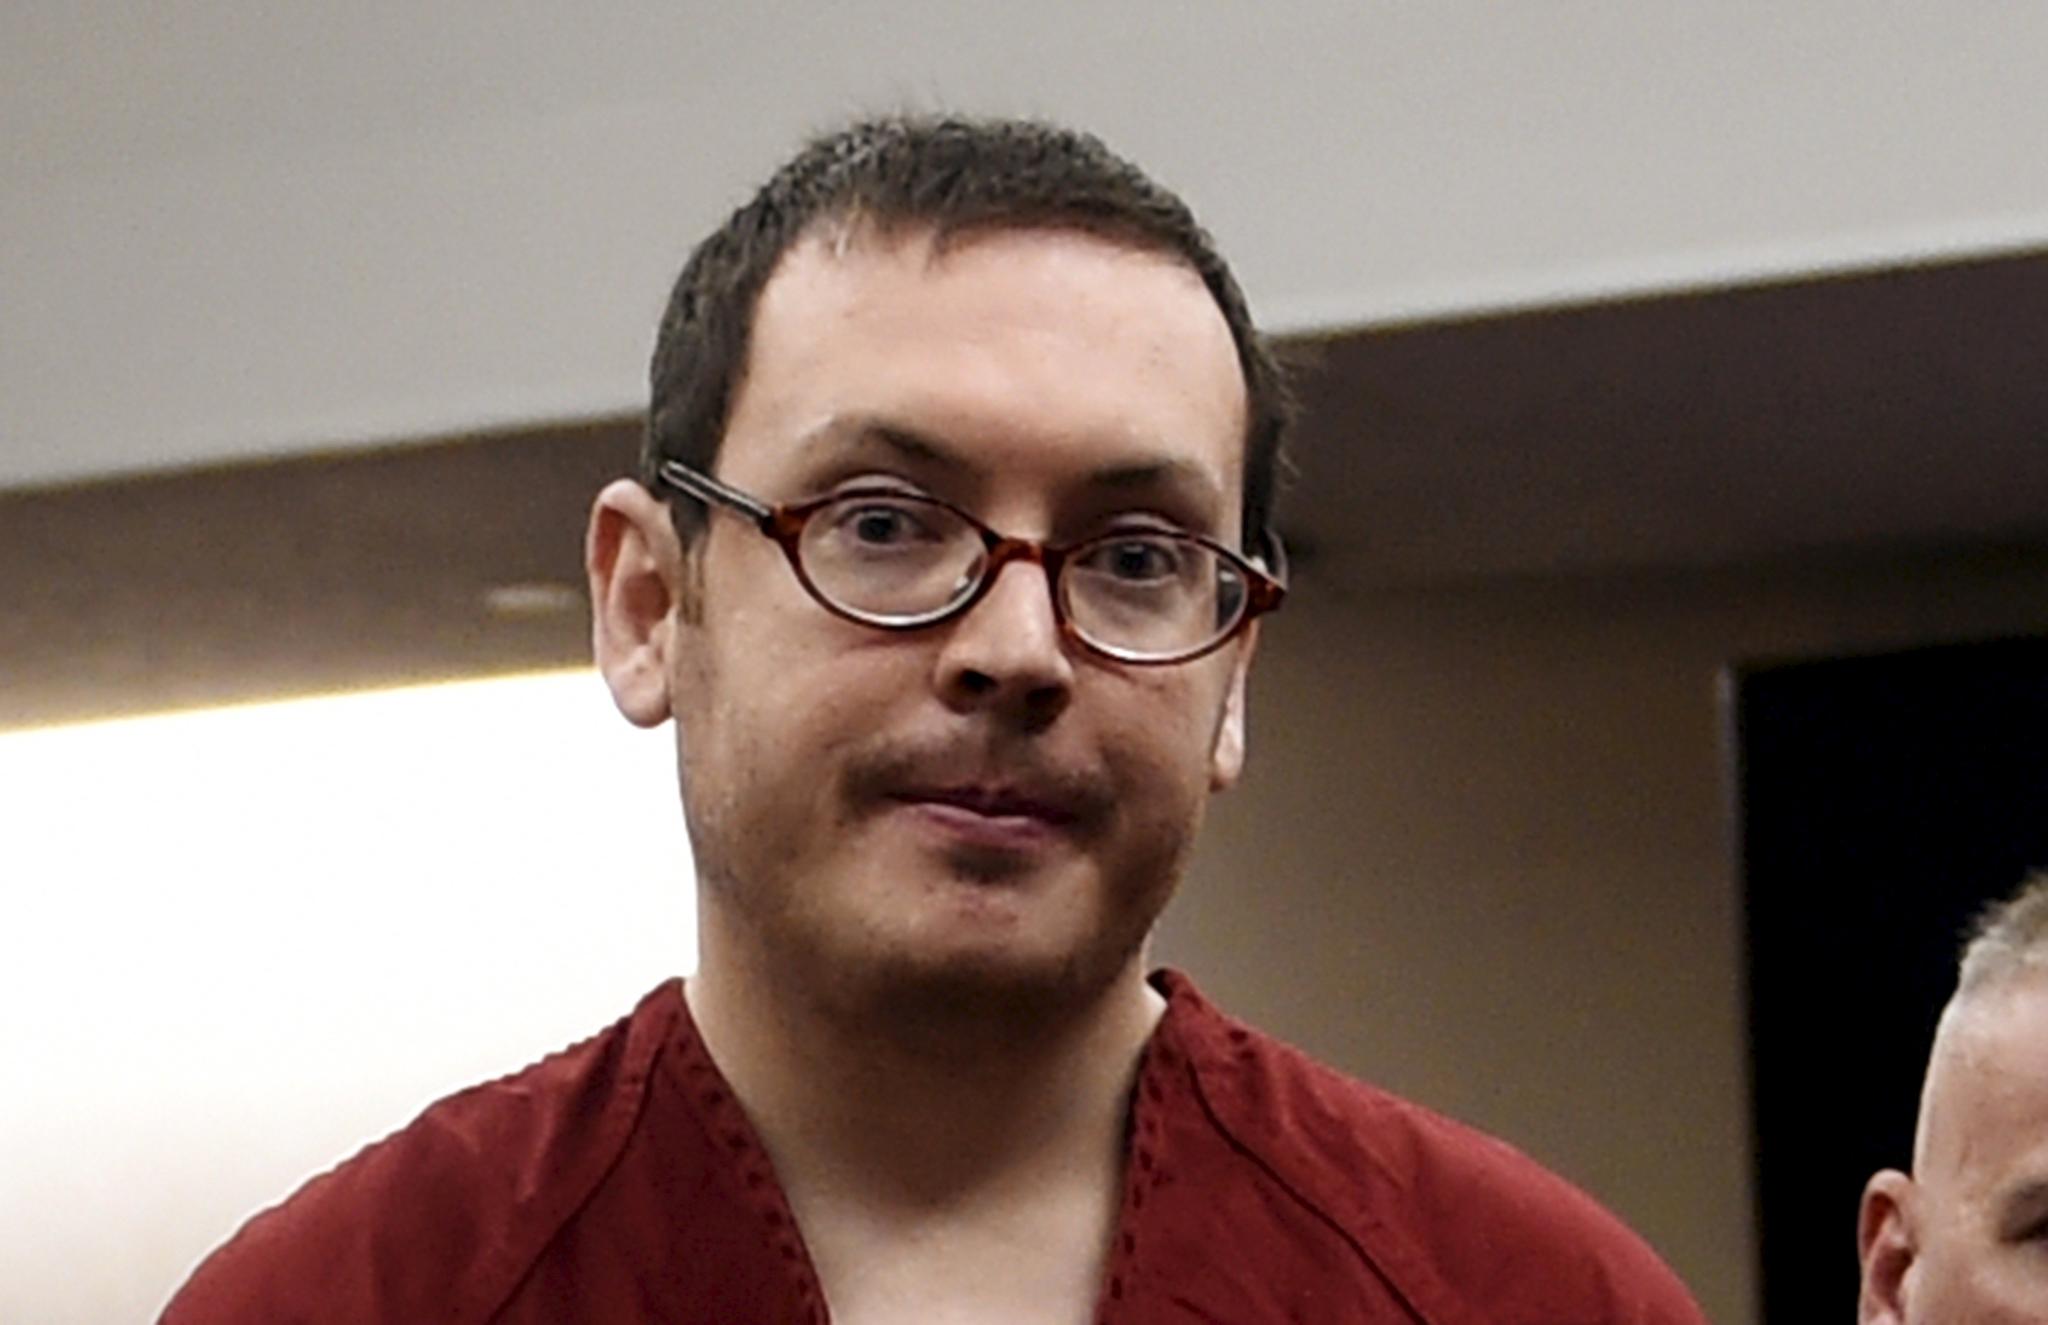  James Holmes ble dømt til fengsel på livstid etter at han drepte 12 i en kino i Aurora.  